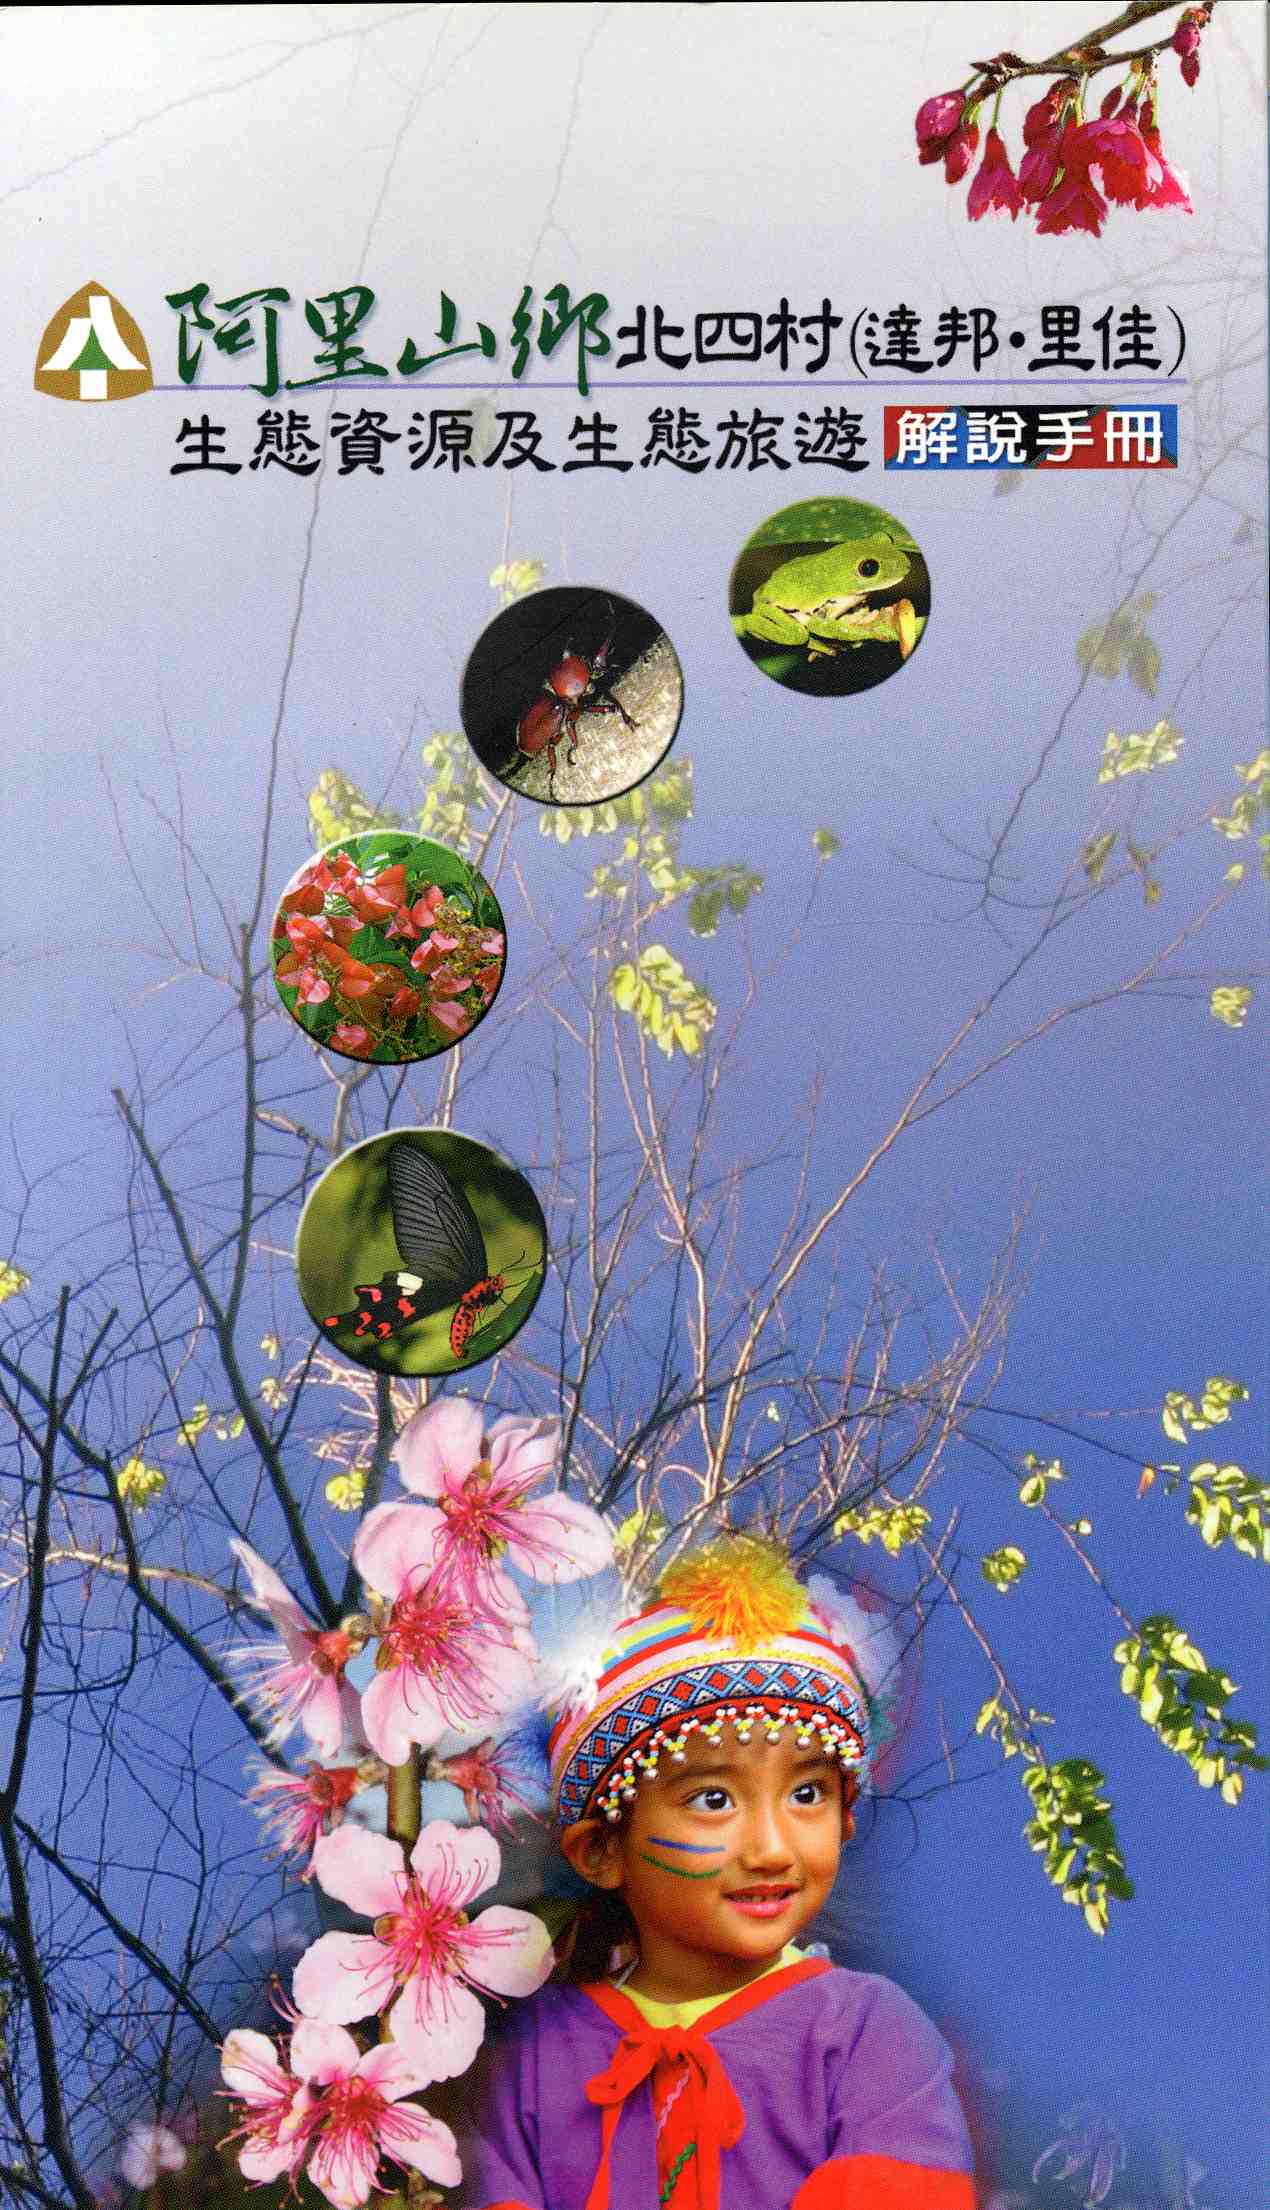 阿里山鄉北四村(里佳,達邦)生態資源及生態旅遊解說手冊